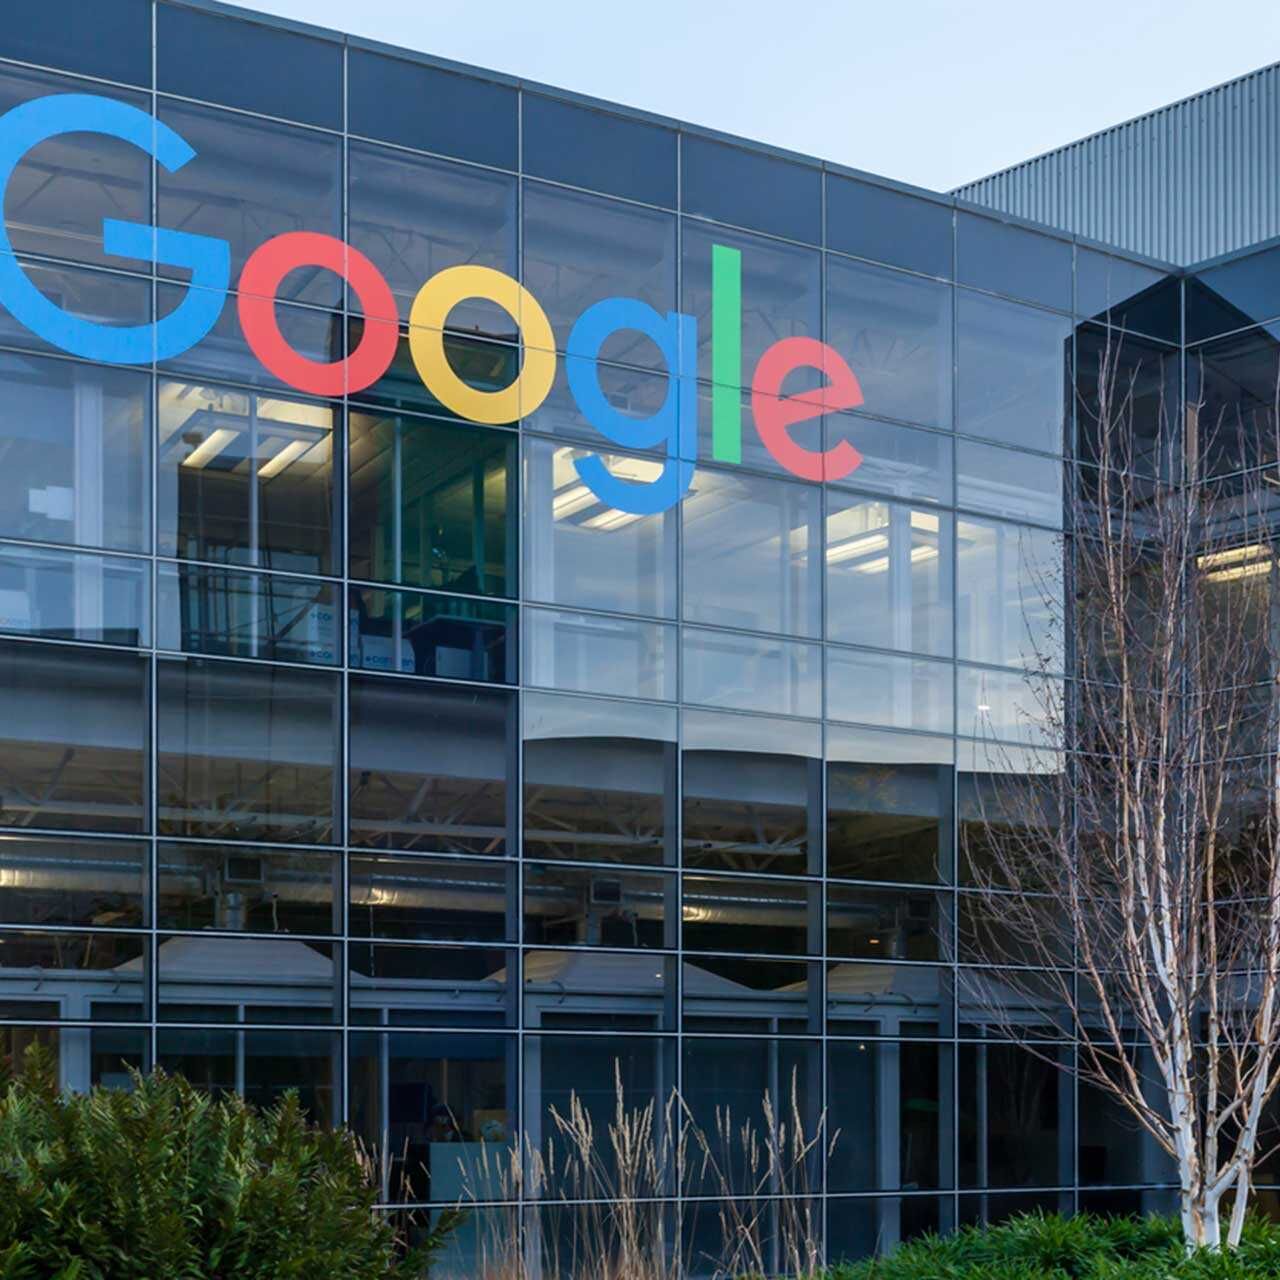 Google je američka tvrtka koja nudi online usluge, sa sjedištem u Mountain Viewu, Kalifornija, u tzv. Googleplexu